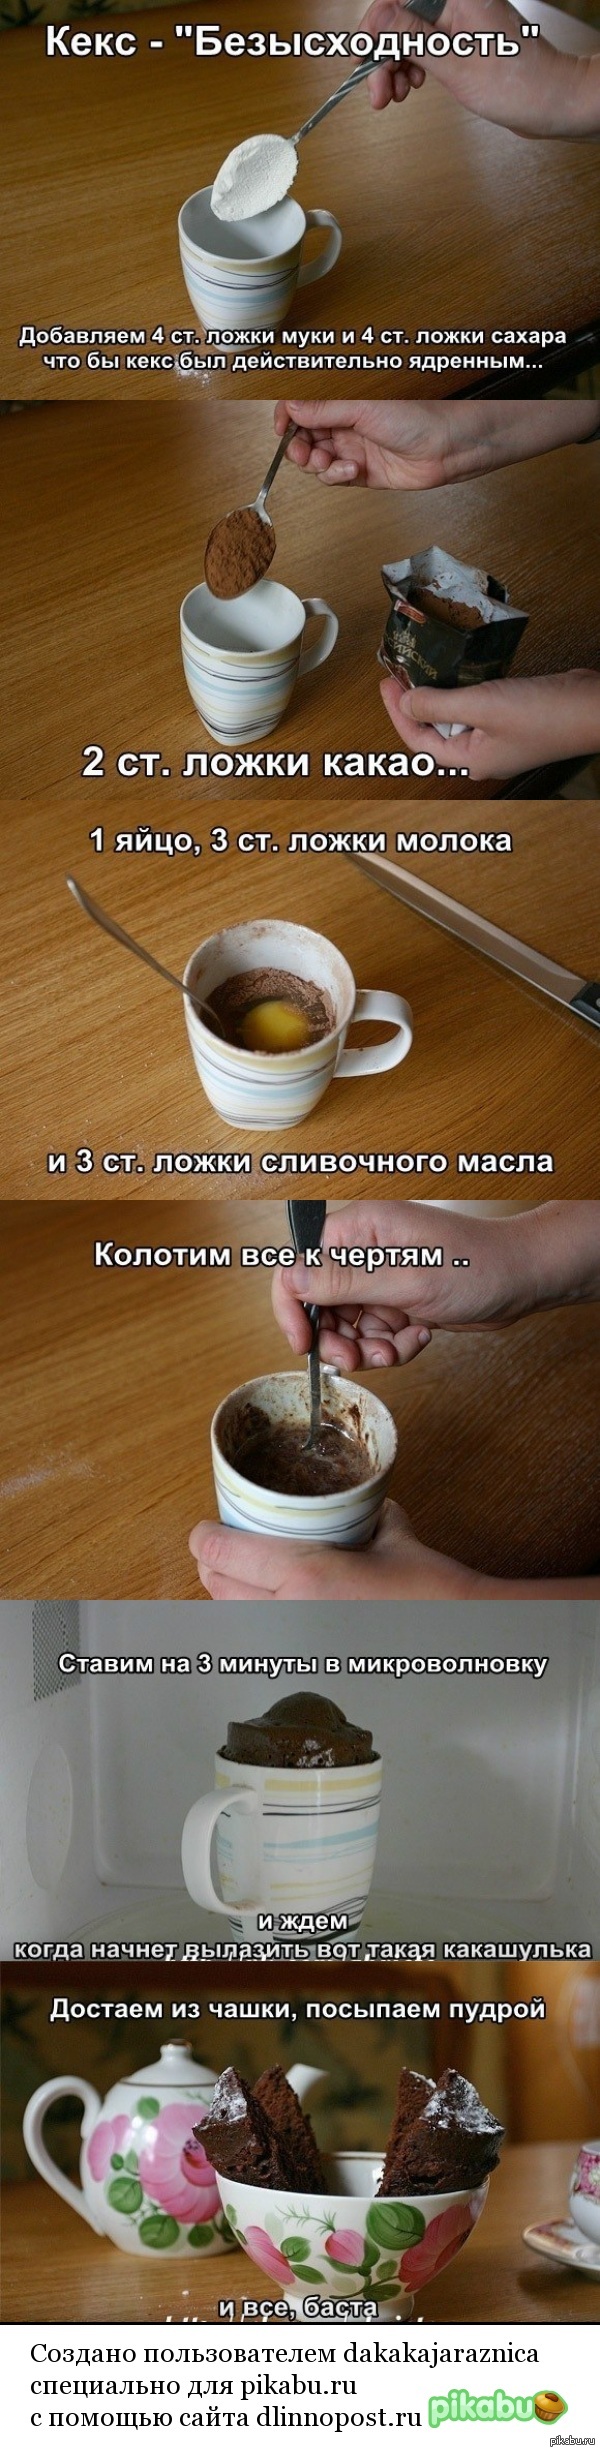 Кекс &quot;Безысходность&quot;   кекс, рецепт, ВКонтакте, длиннопост